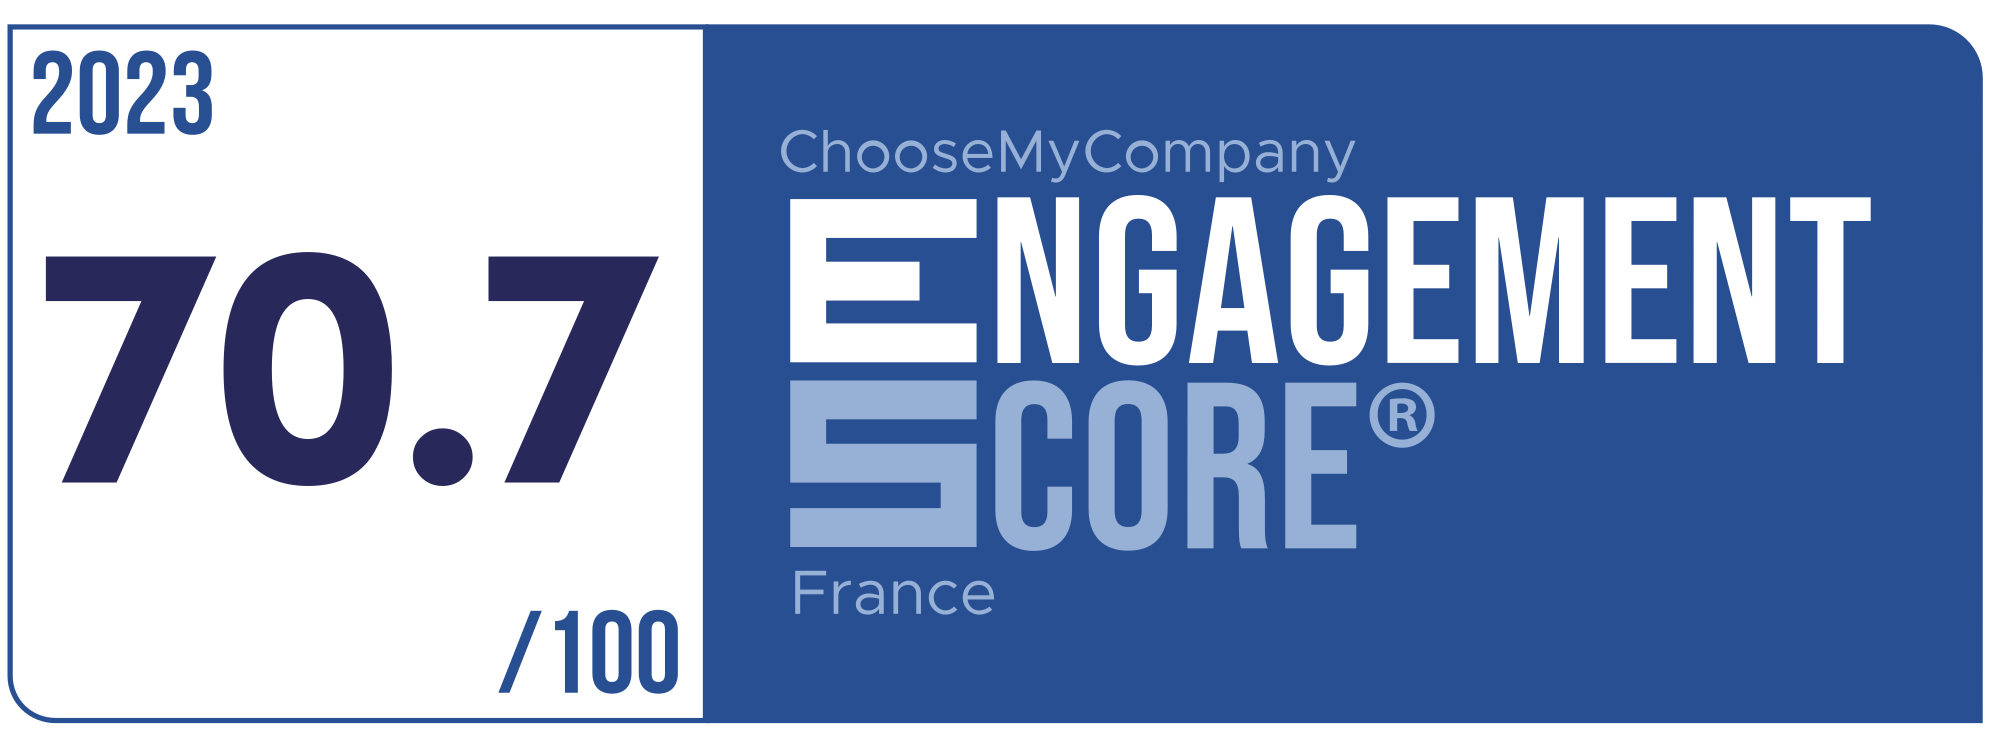 Label Engagement Score 2023 France